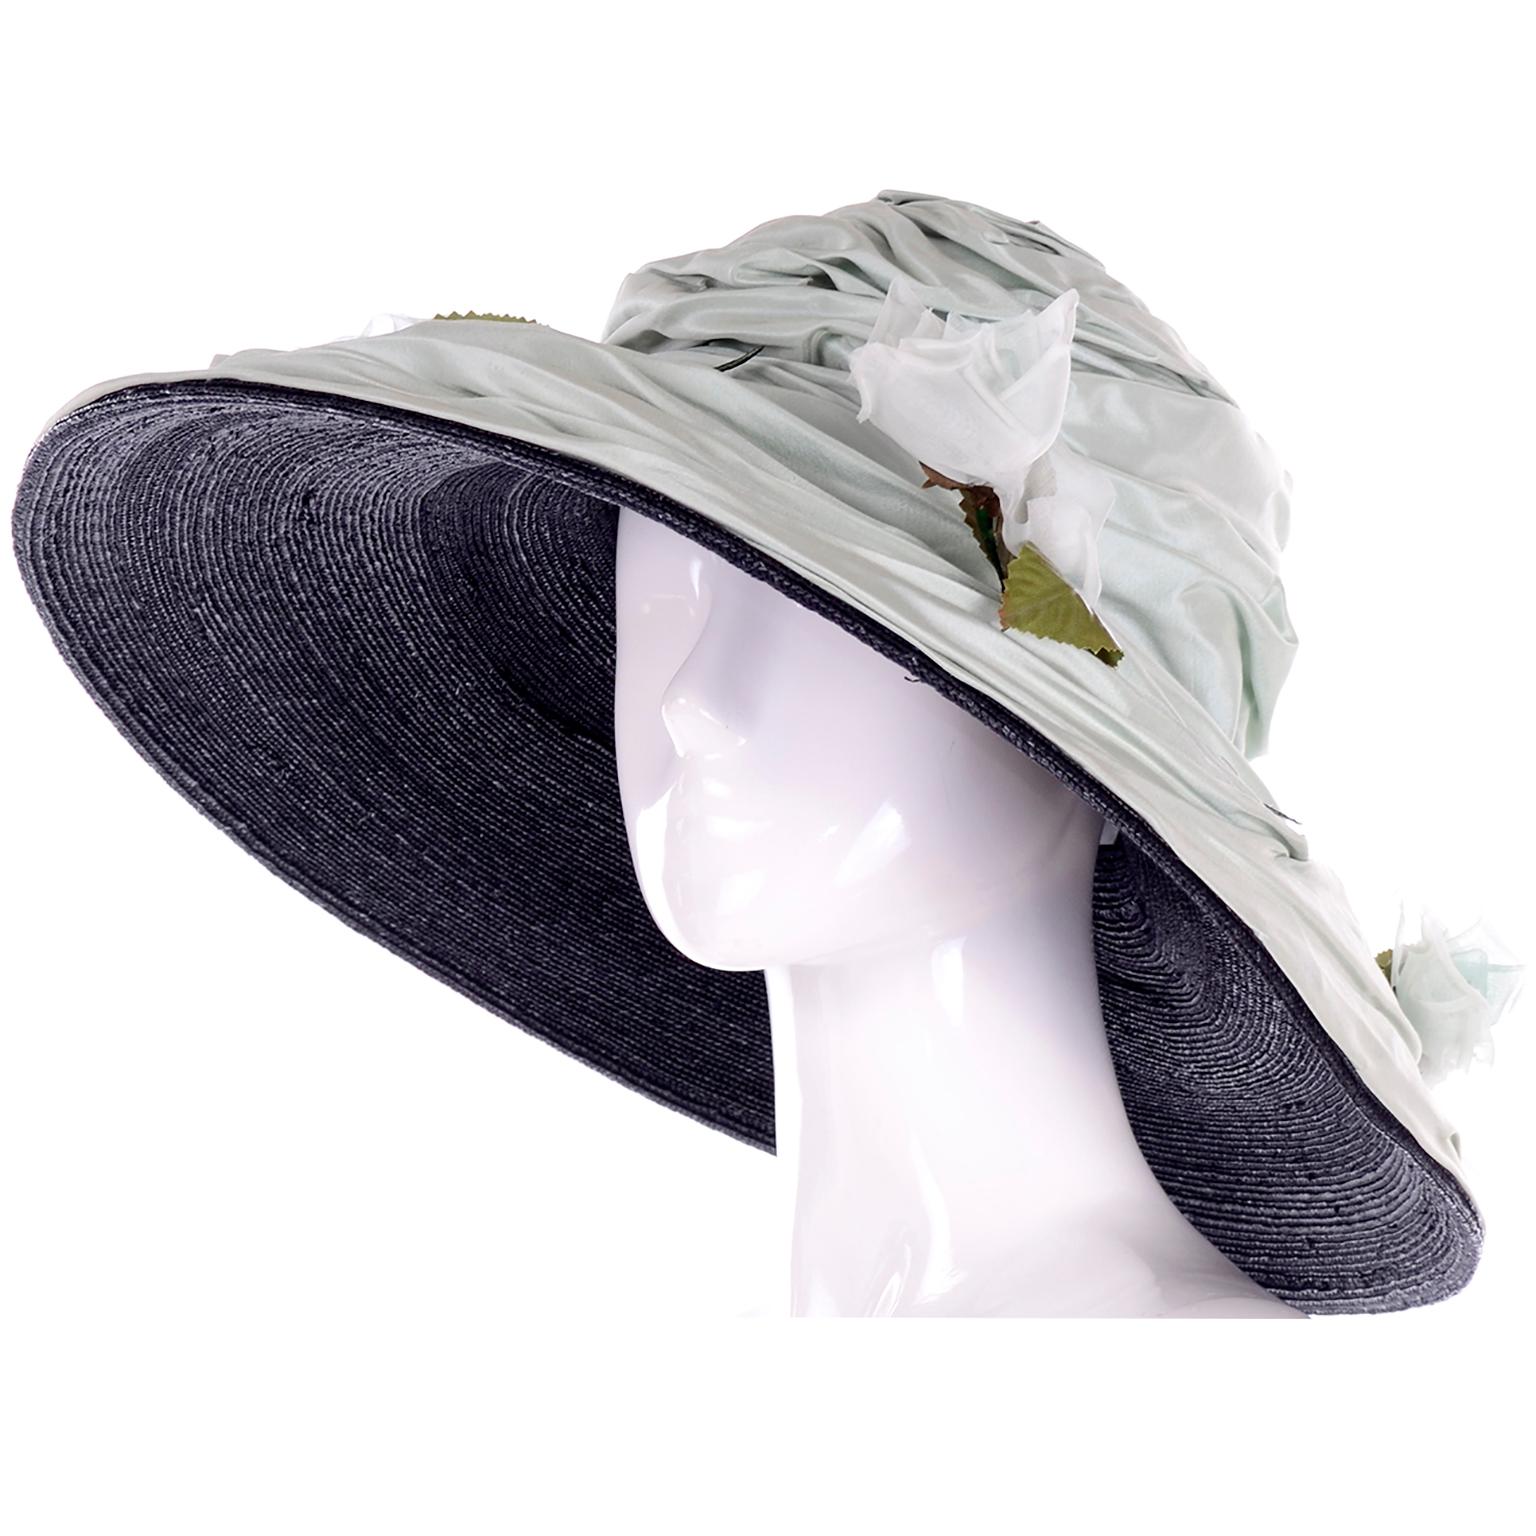 Il s'agit d'un incroyable chapeau à large bord conçu par la célèbre modiste londonienne Rachel Trevor Morgan. Rachel Trevor Morgan a conçu des chapeaux pour la famille royale et a vendu ses chapeaux chez Bergdorf Goodman, Harrods et d'autres